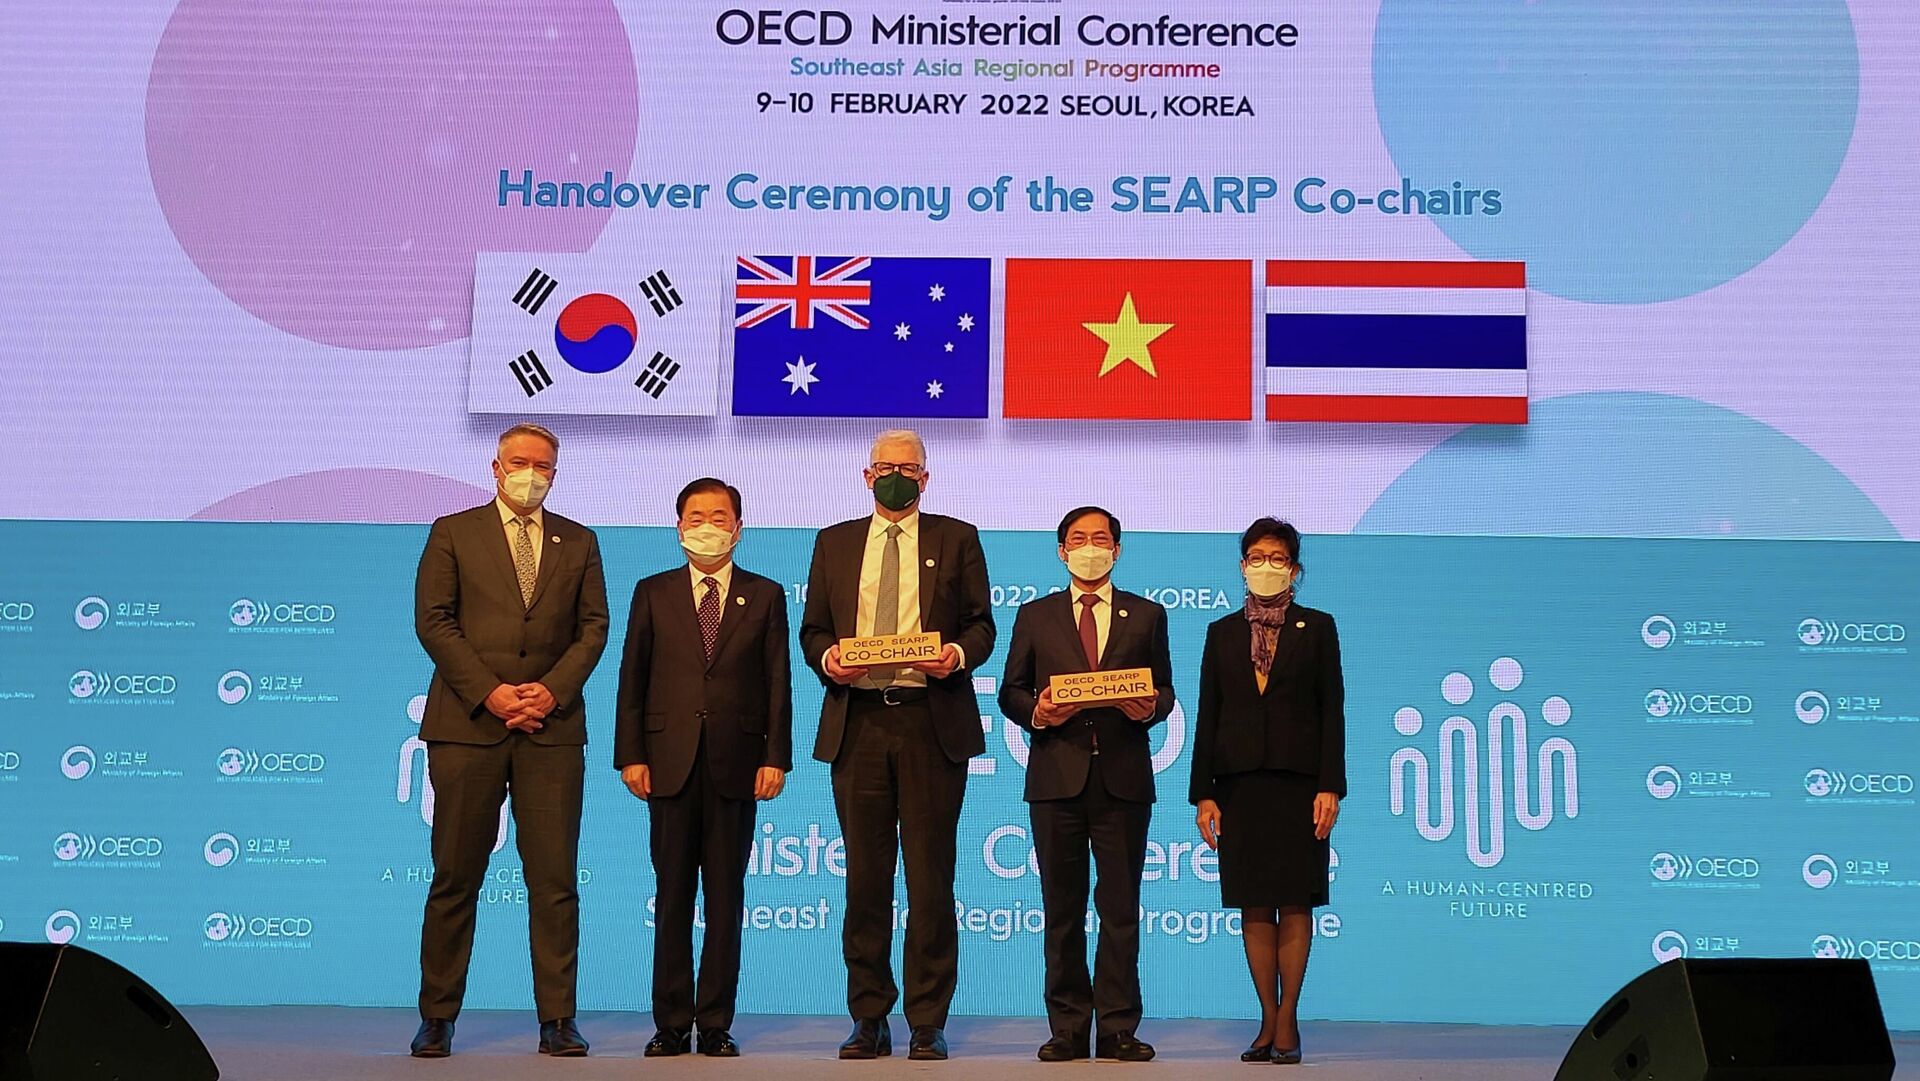 Việt Nam và Australia chính thức tiếp nhận vai trò Đồng Chủ tịch Chương trình SEARP giai đoạn 2022- 2025 từ Hàn Quốc và Thái Lan - Sputnik Việt Nam, 1920, 09.02.2022